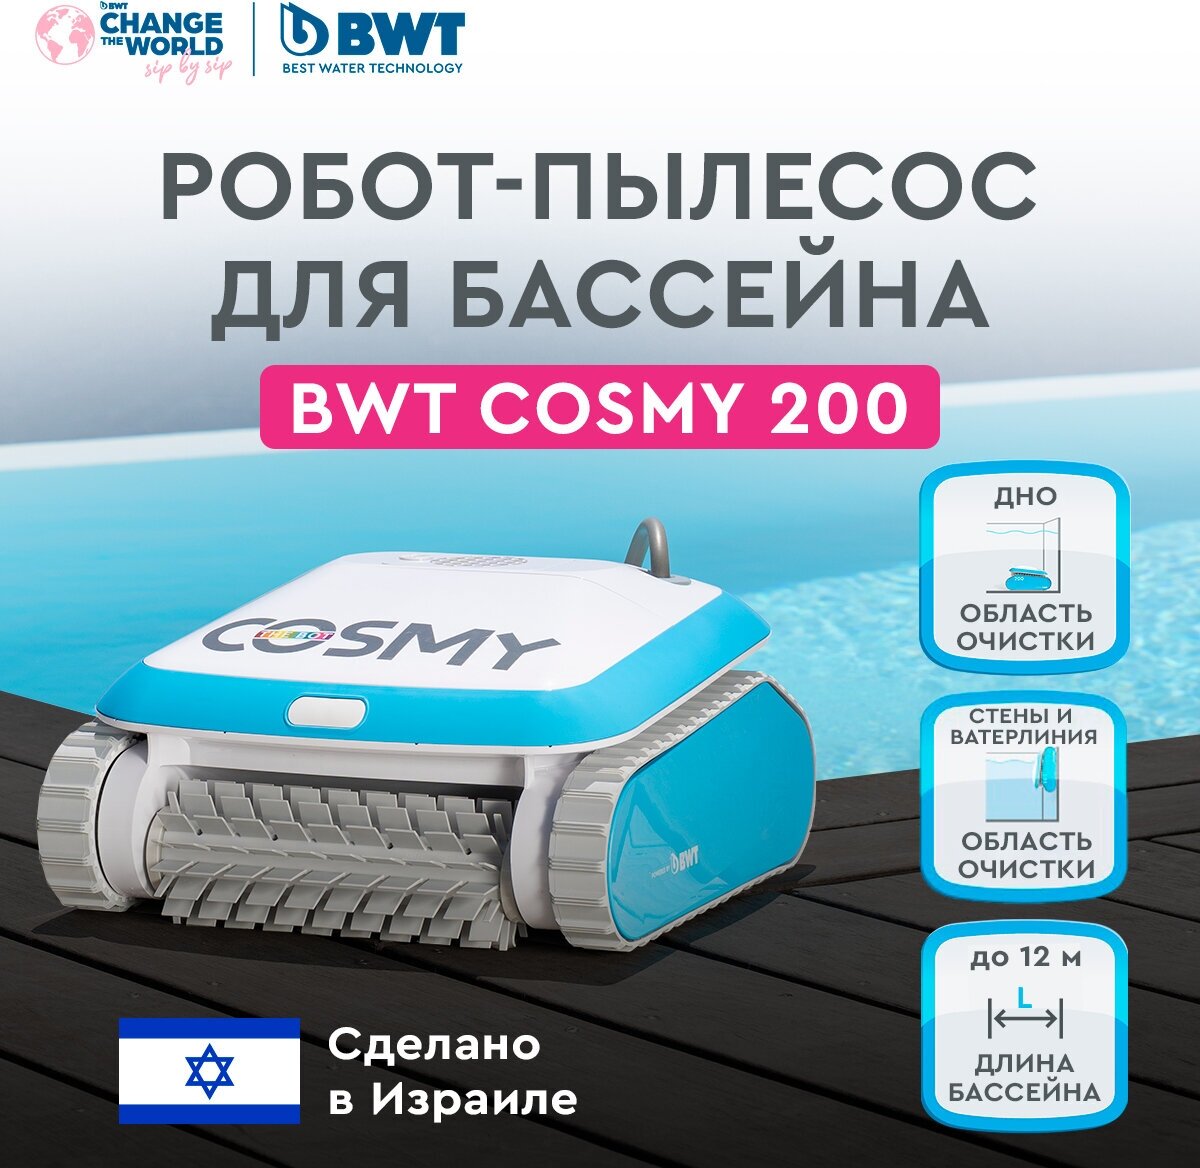 Робот-пылесос для бассейна BWT COSMY 200 для очистки дна стен и ватерлинии